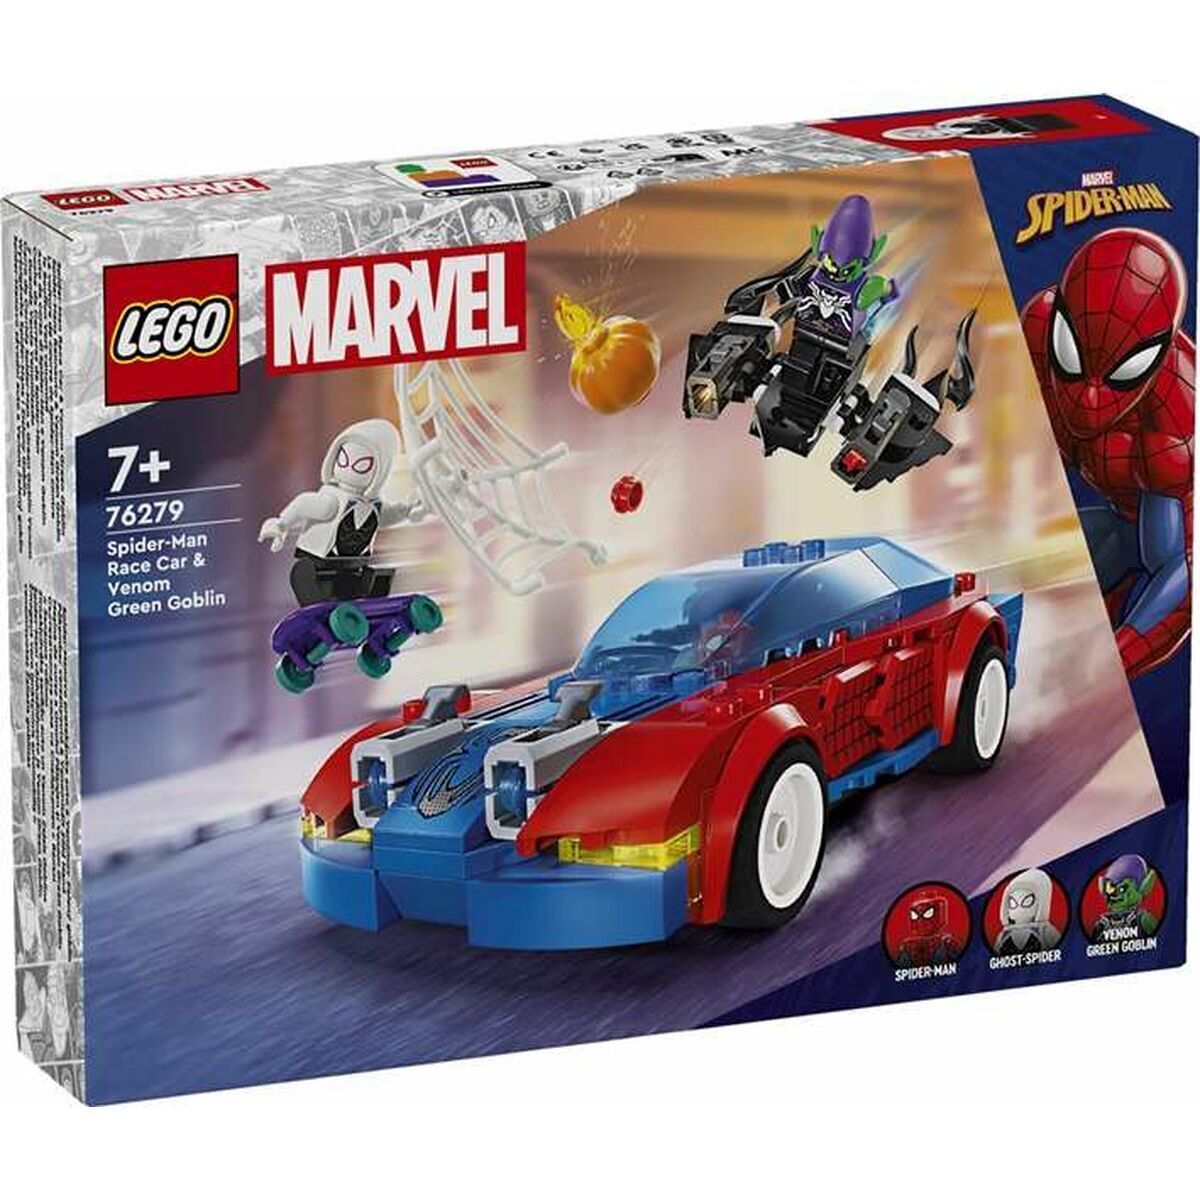 76279: Spider-Man Race Car & Venom Green Goblin